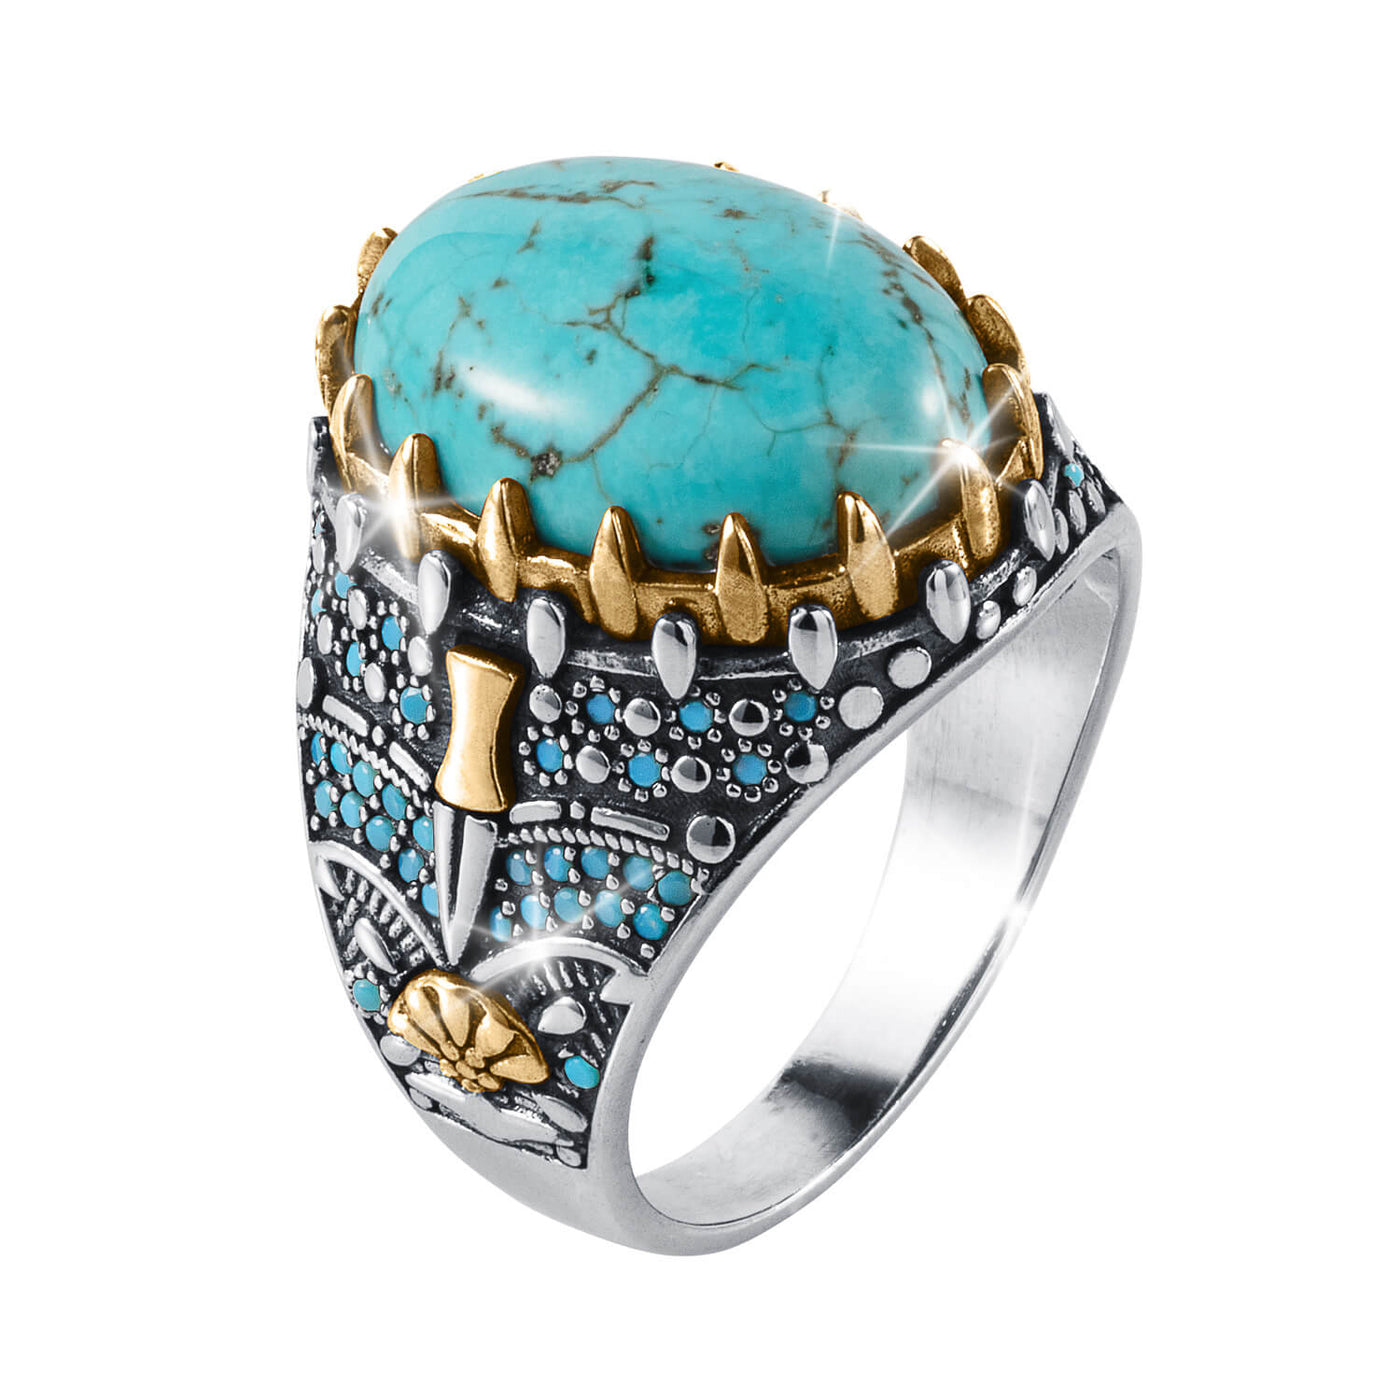 Daniel Steiger Legacy Turquoise Men's Ring